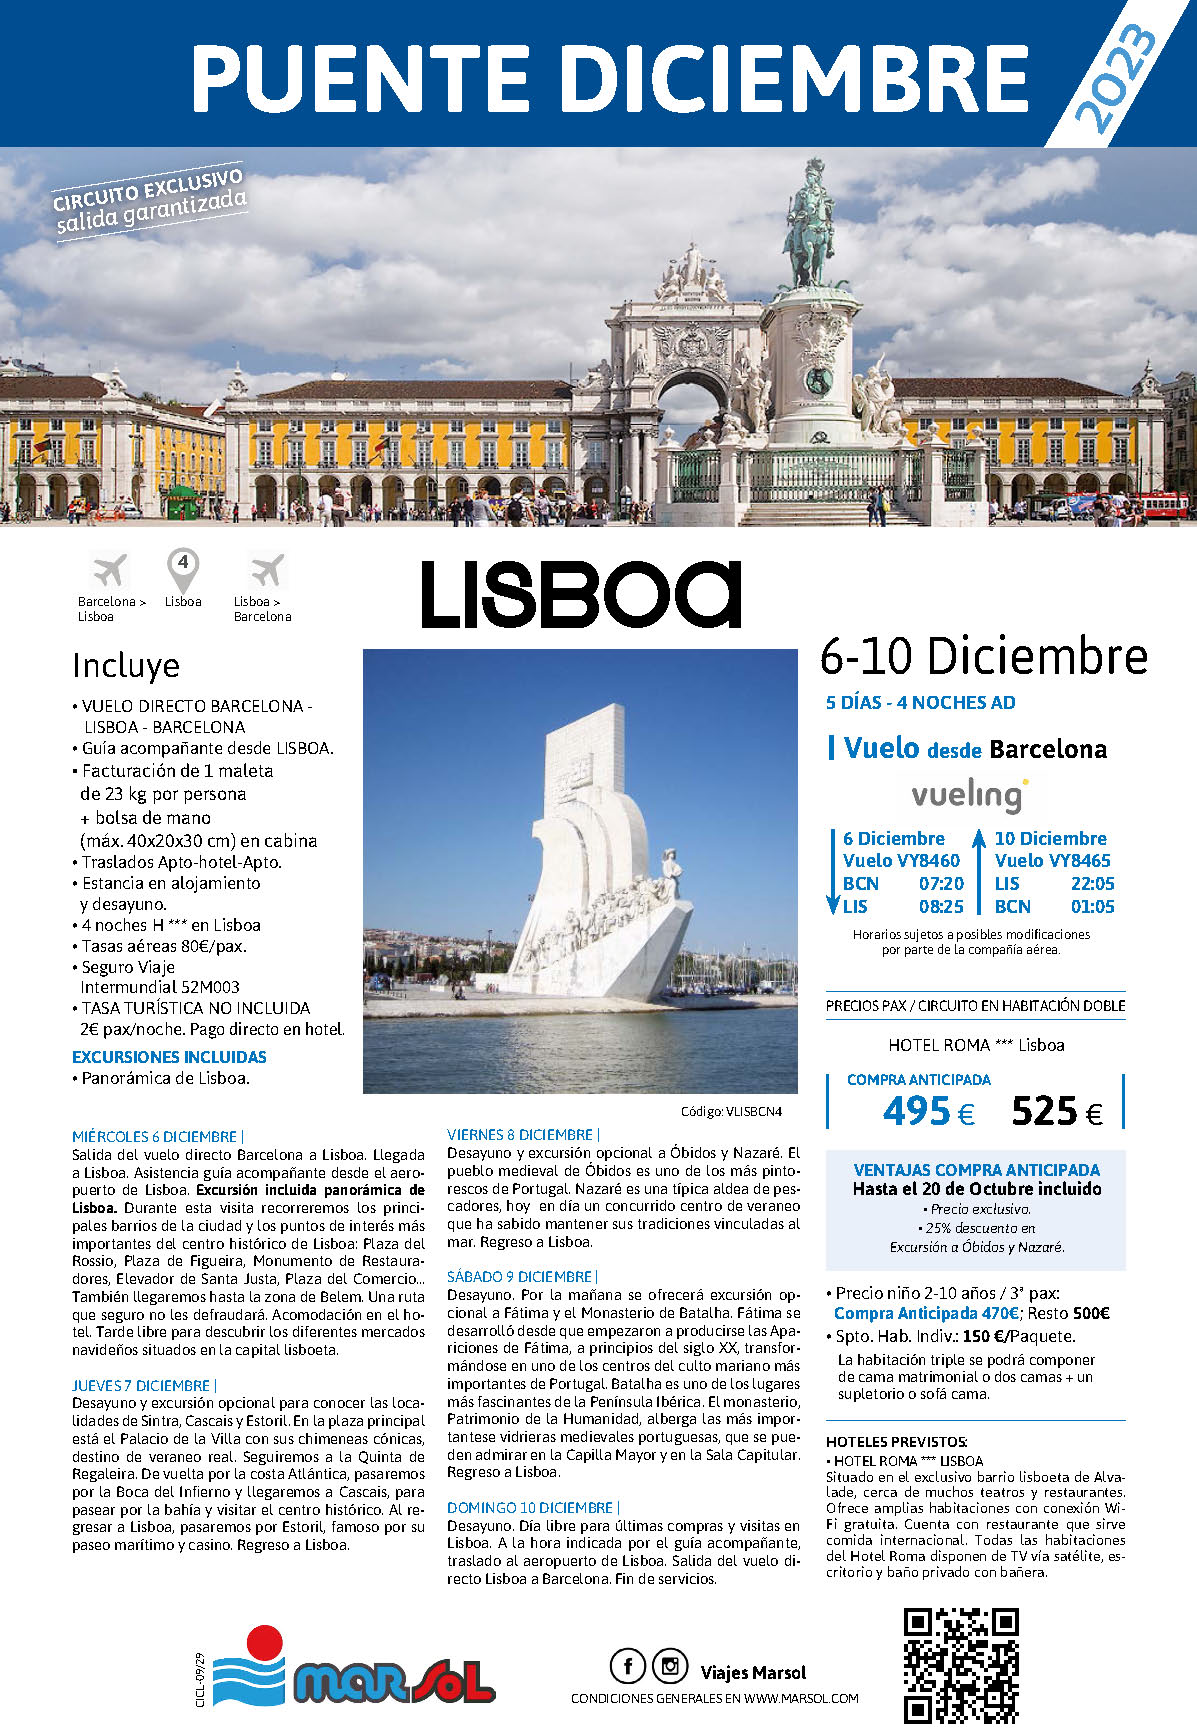 Oferta Marsol Puente de Diciembre 2023 Estancia en Lisboa con excursiones 5 dias salida 6 diciembre vuelo directo desde Barcelona